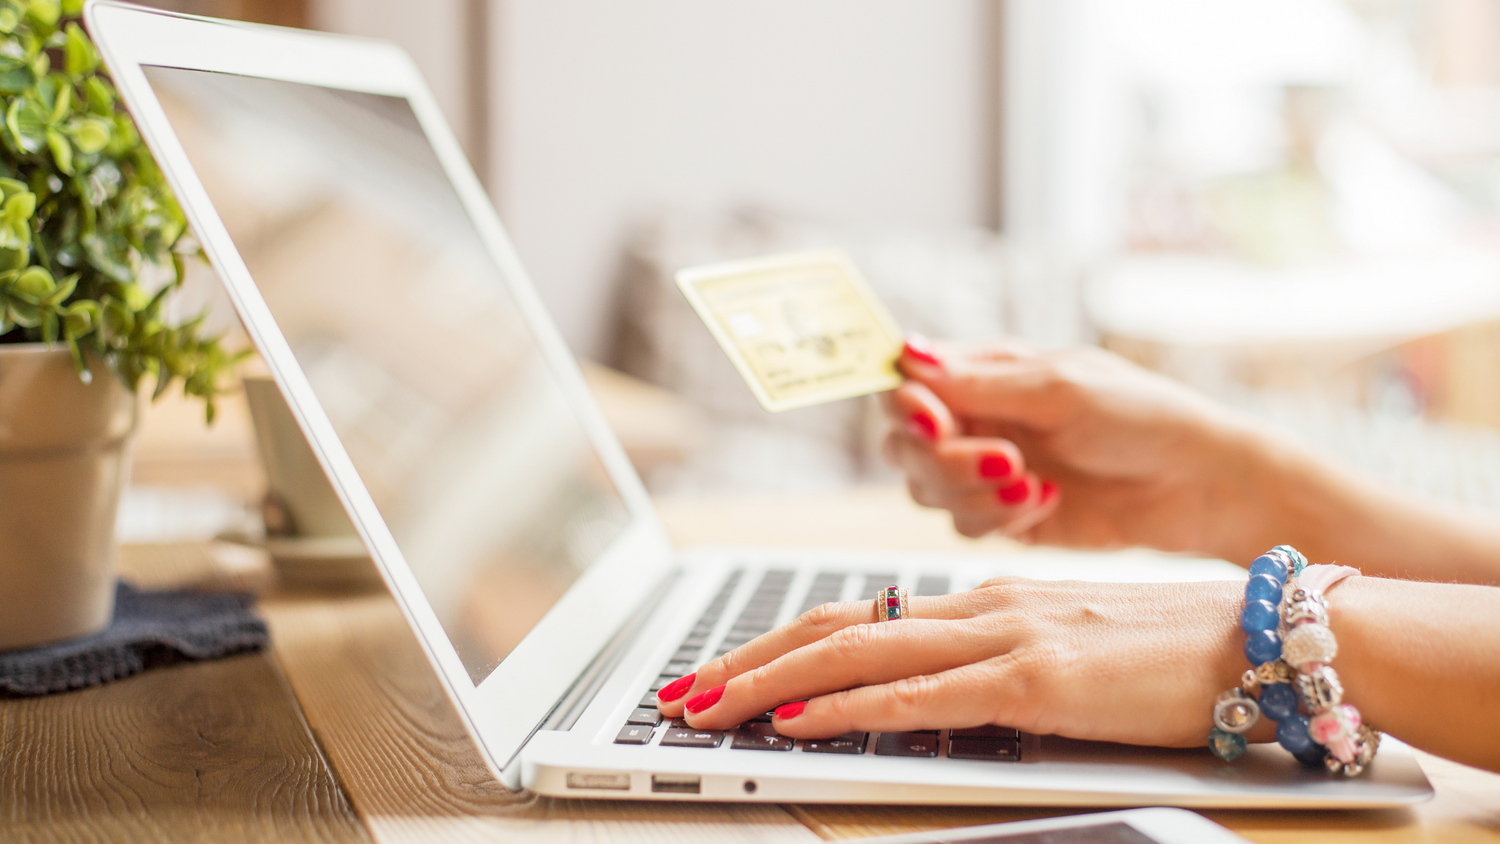 Glo te ofrece nuevas formas de pago en la tienda online